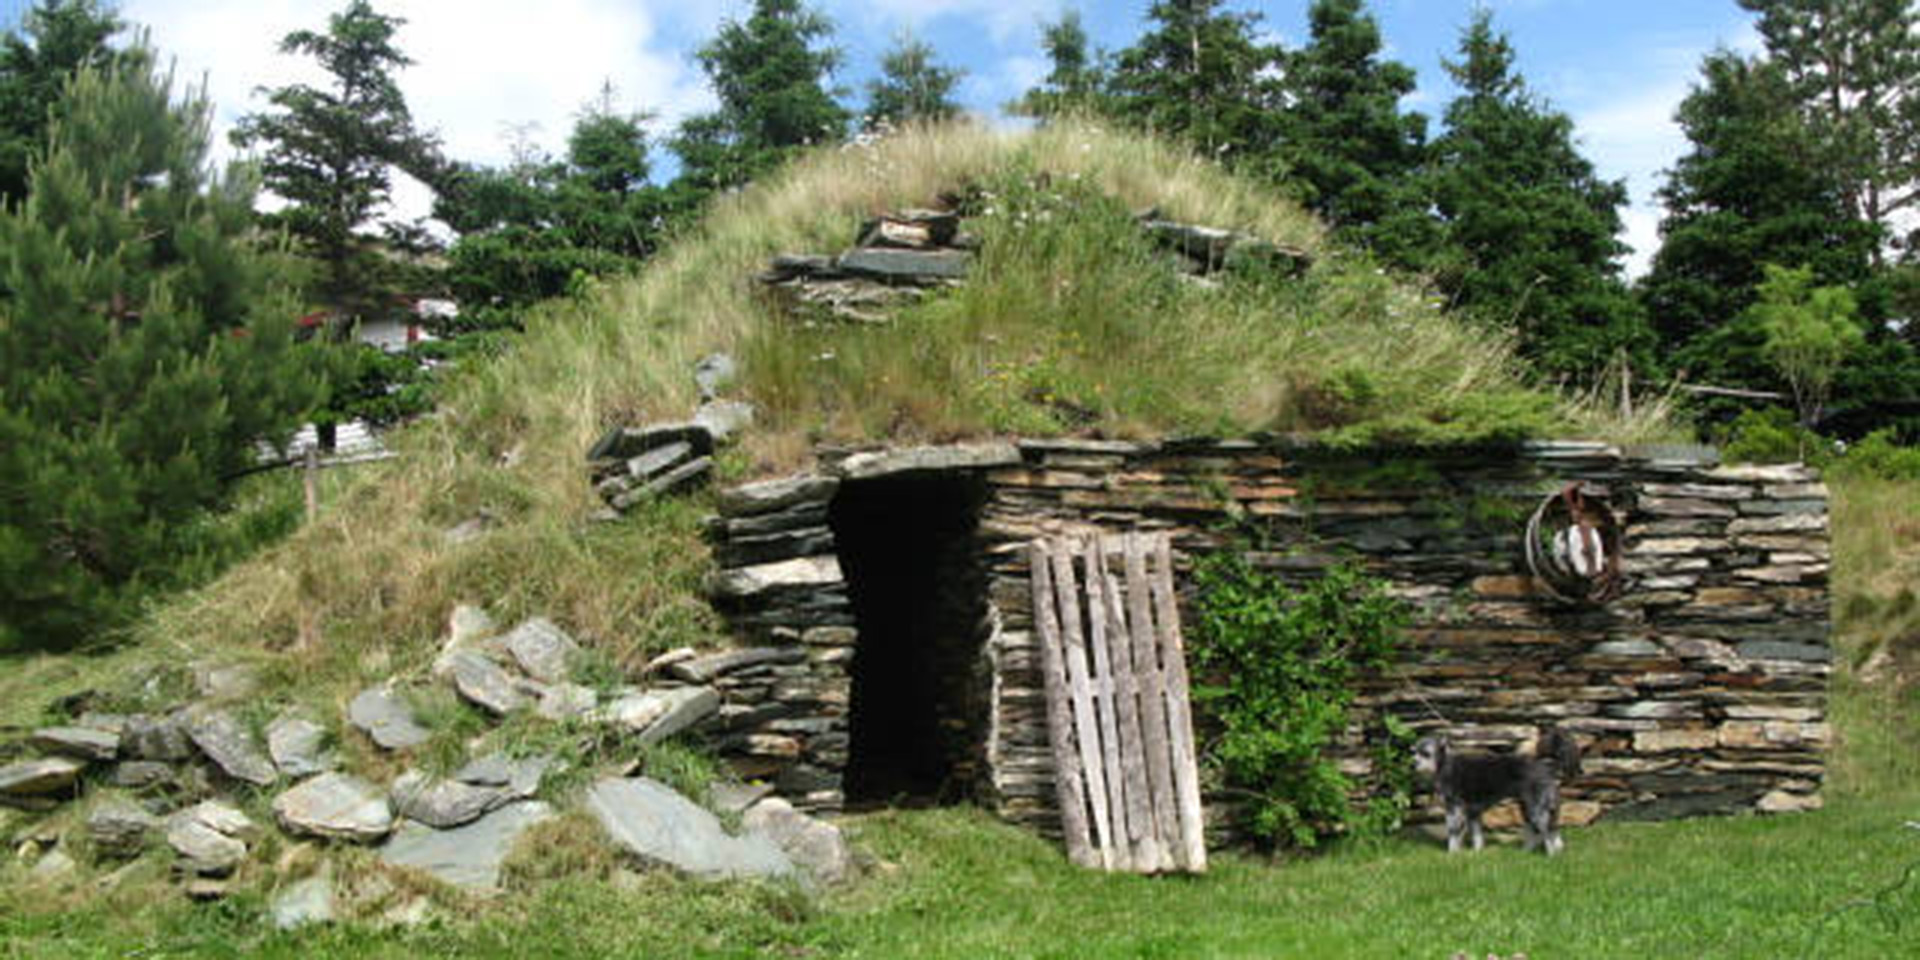 Extérieur d’une cave à légumes à flanc de colline, avec façade en pierres empilées et dessus recouvert d’herbe.